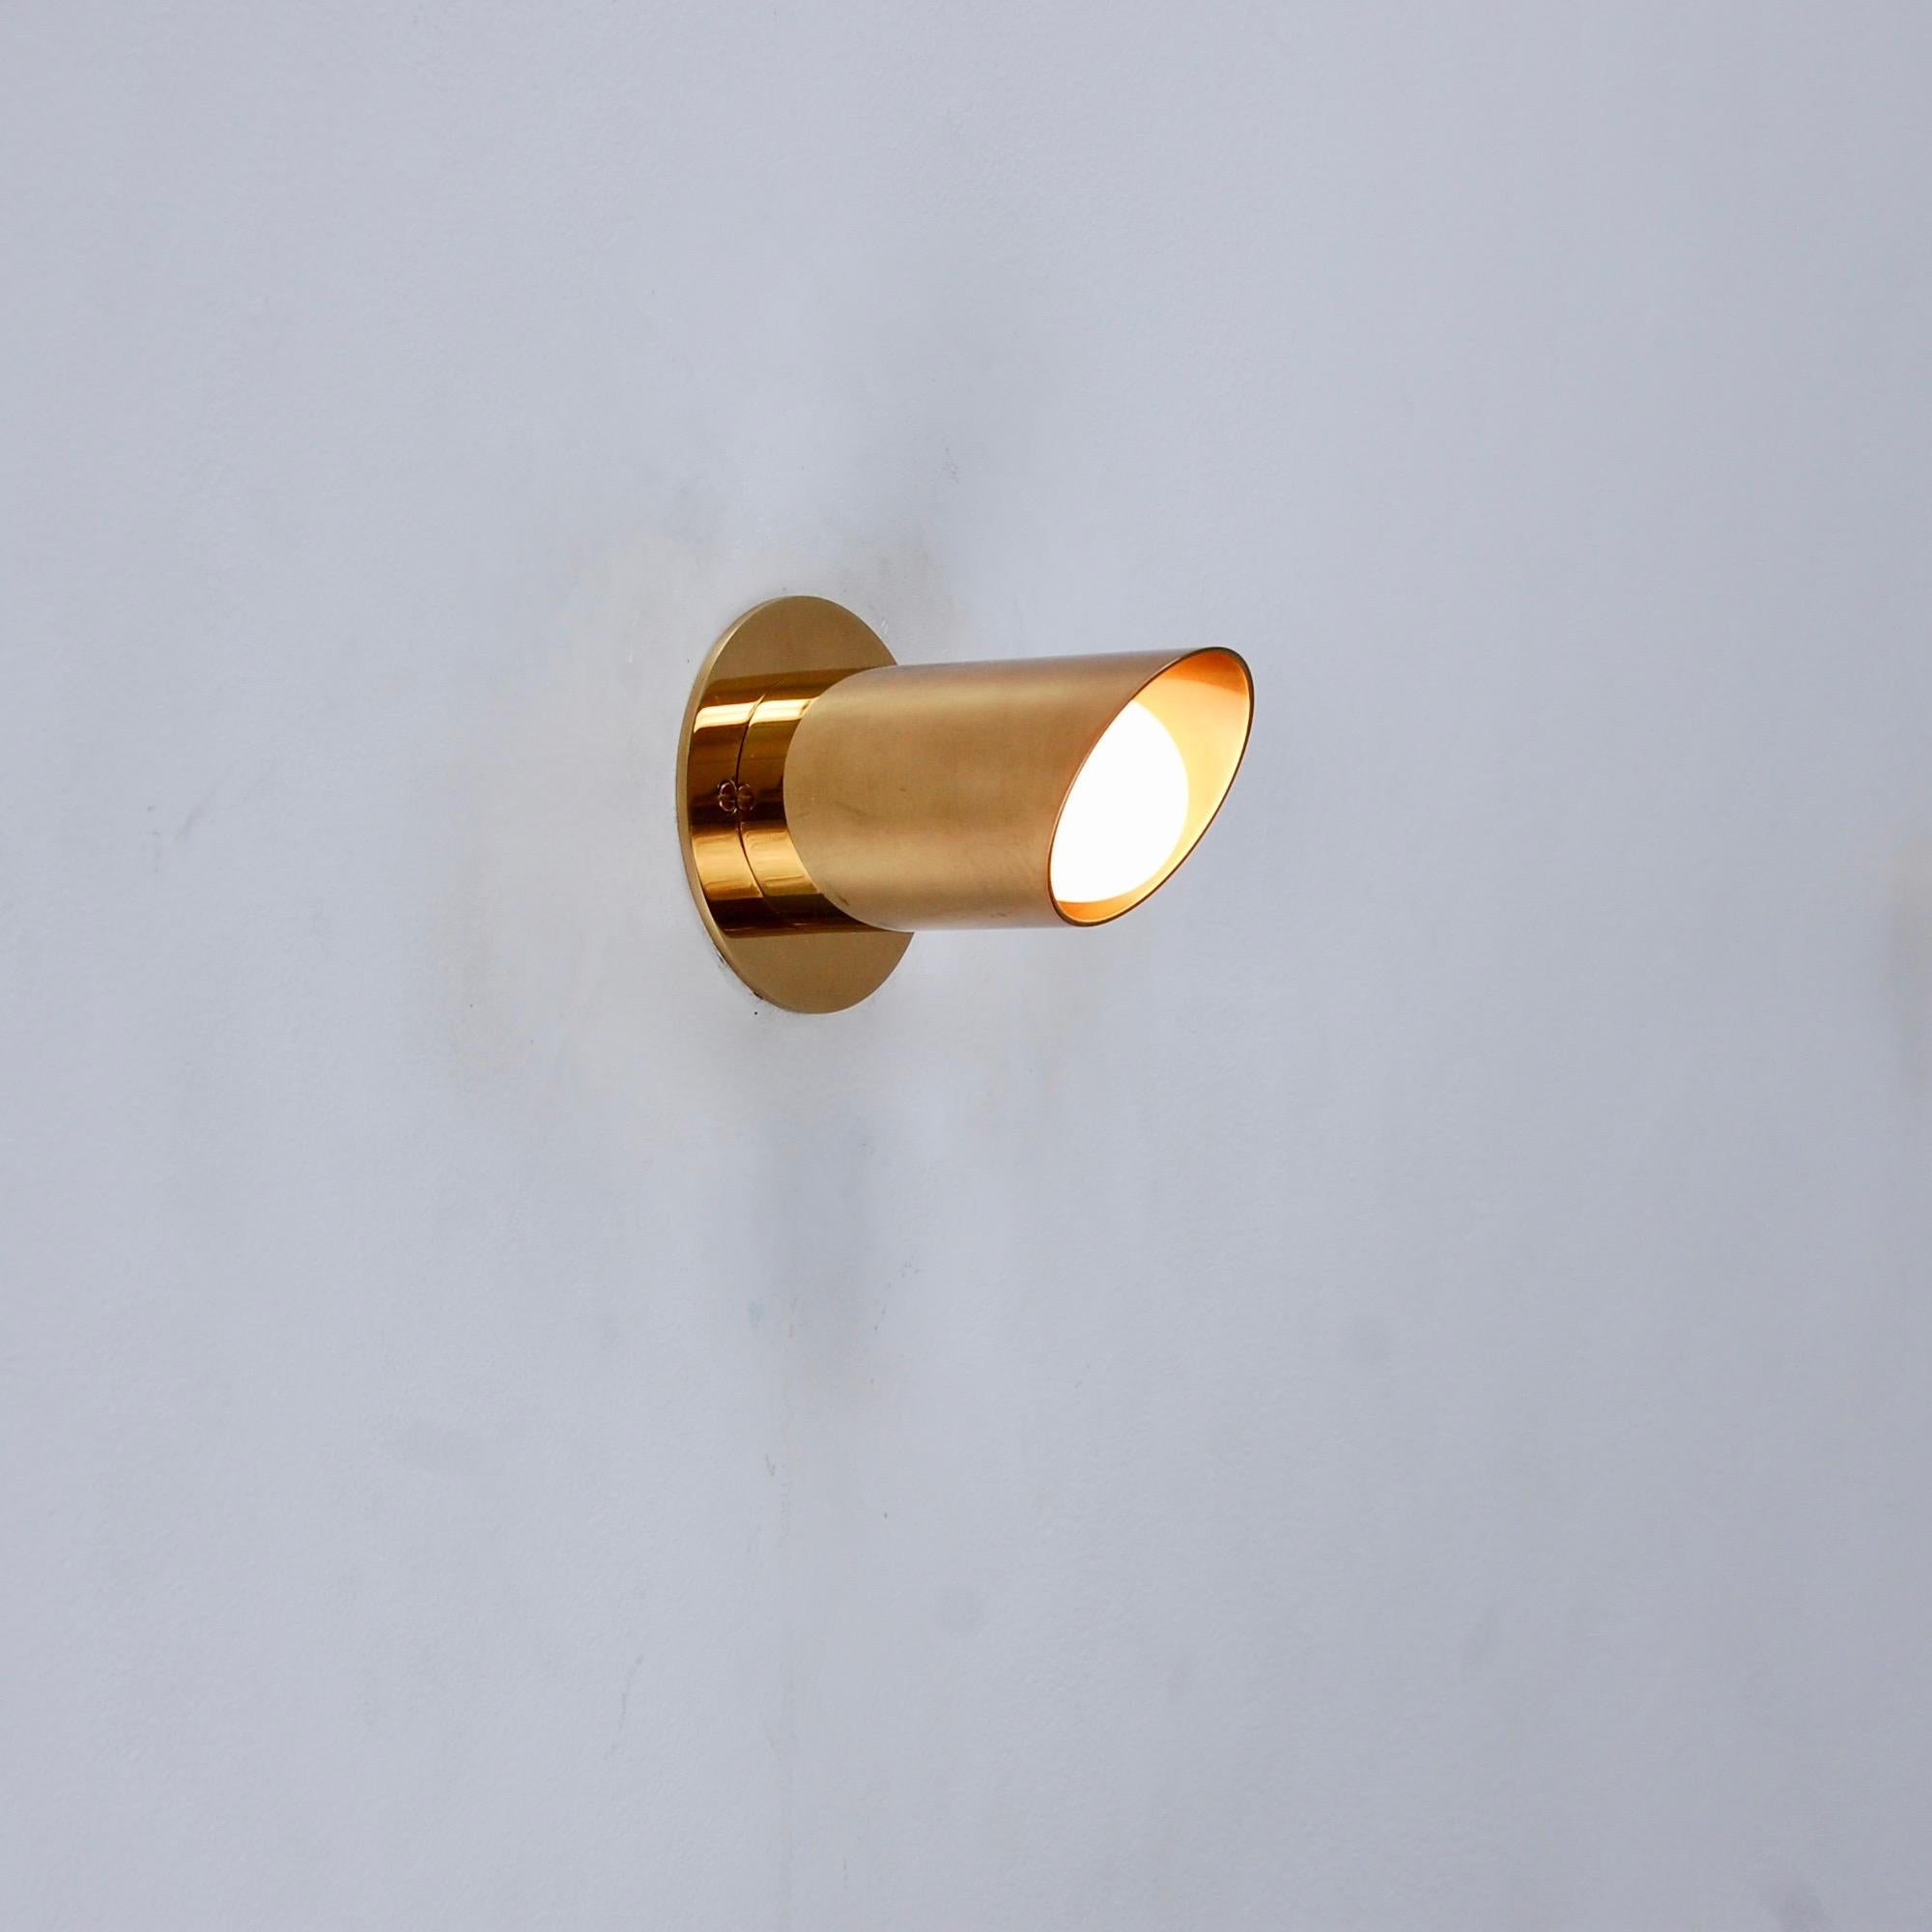 Klassische LUpipe-Leuchte aus Messing mit Patina aus Messing von Lumfardo Luminiares. Diese vom italienischen Midcentury-Design der 1950er Jahre inspirierte Leuchte ist ideal für den Schminkspiegel oder zur Beleuchtung einer Kunstwand. Kann auch als